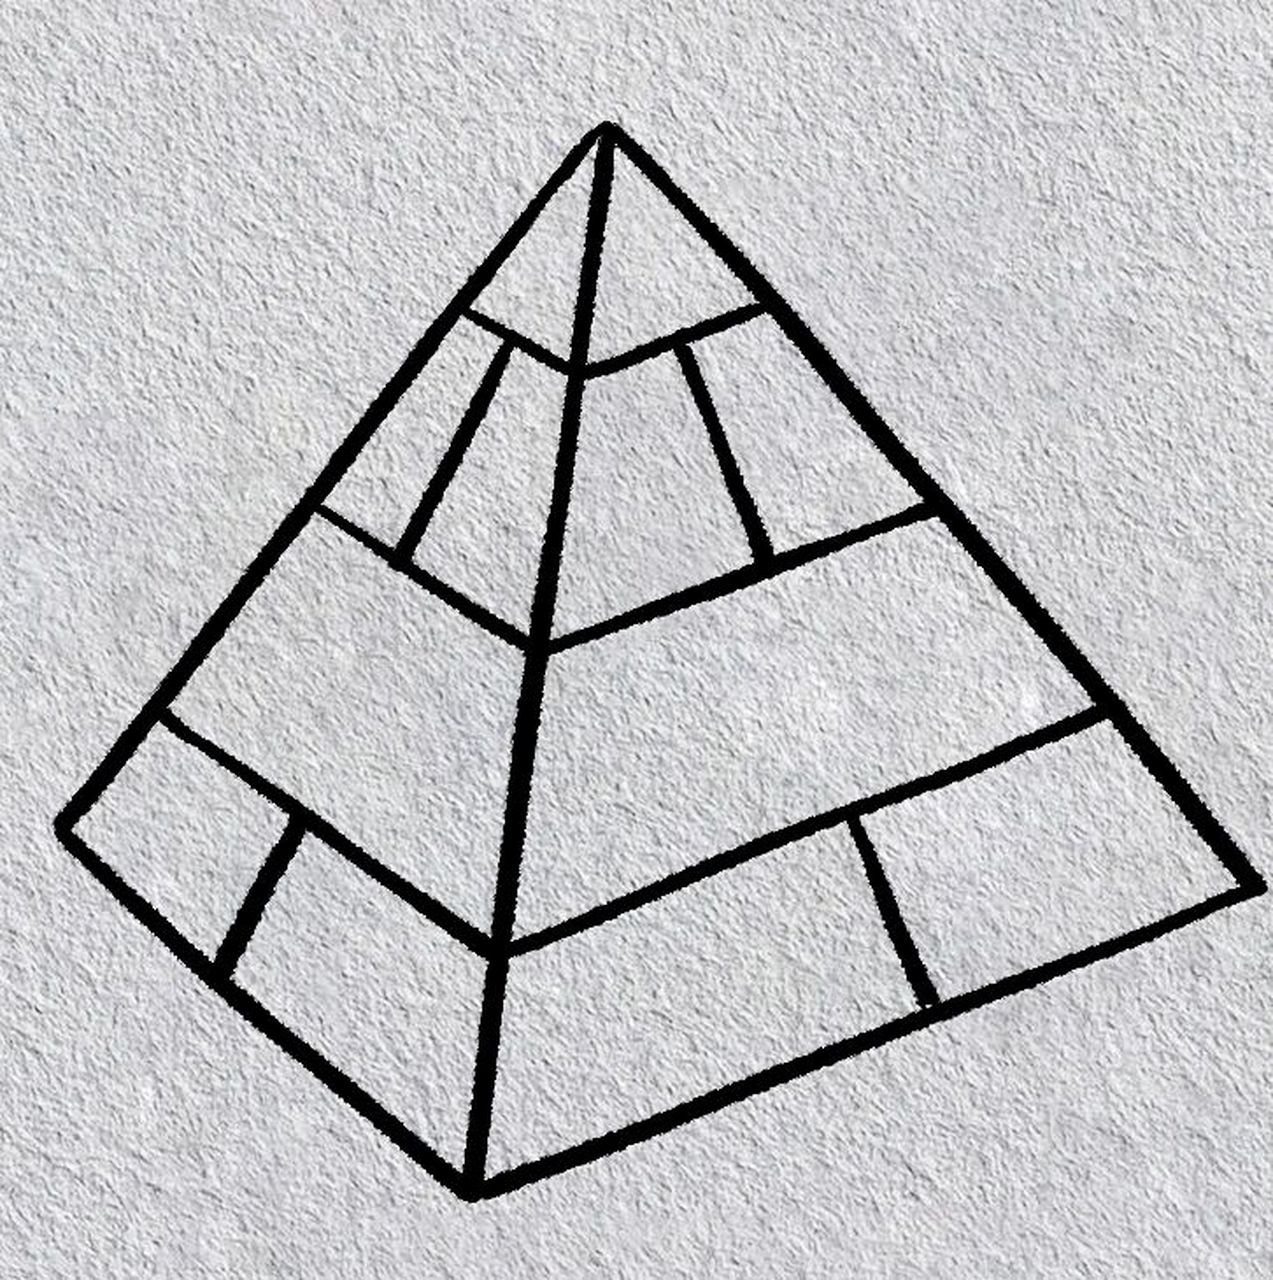 金字塔画画教程图片